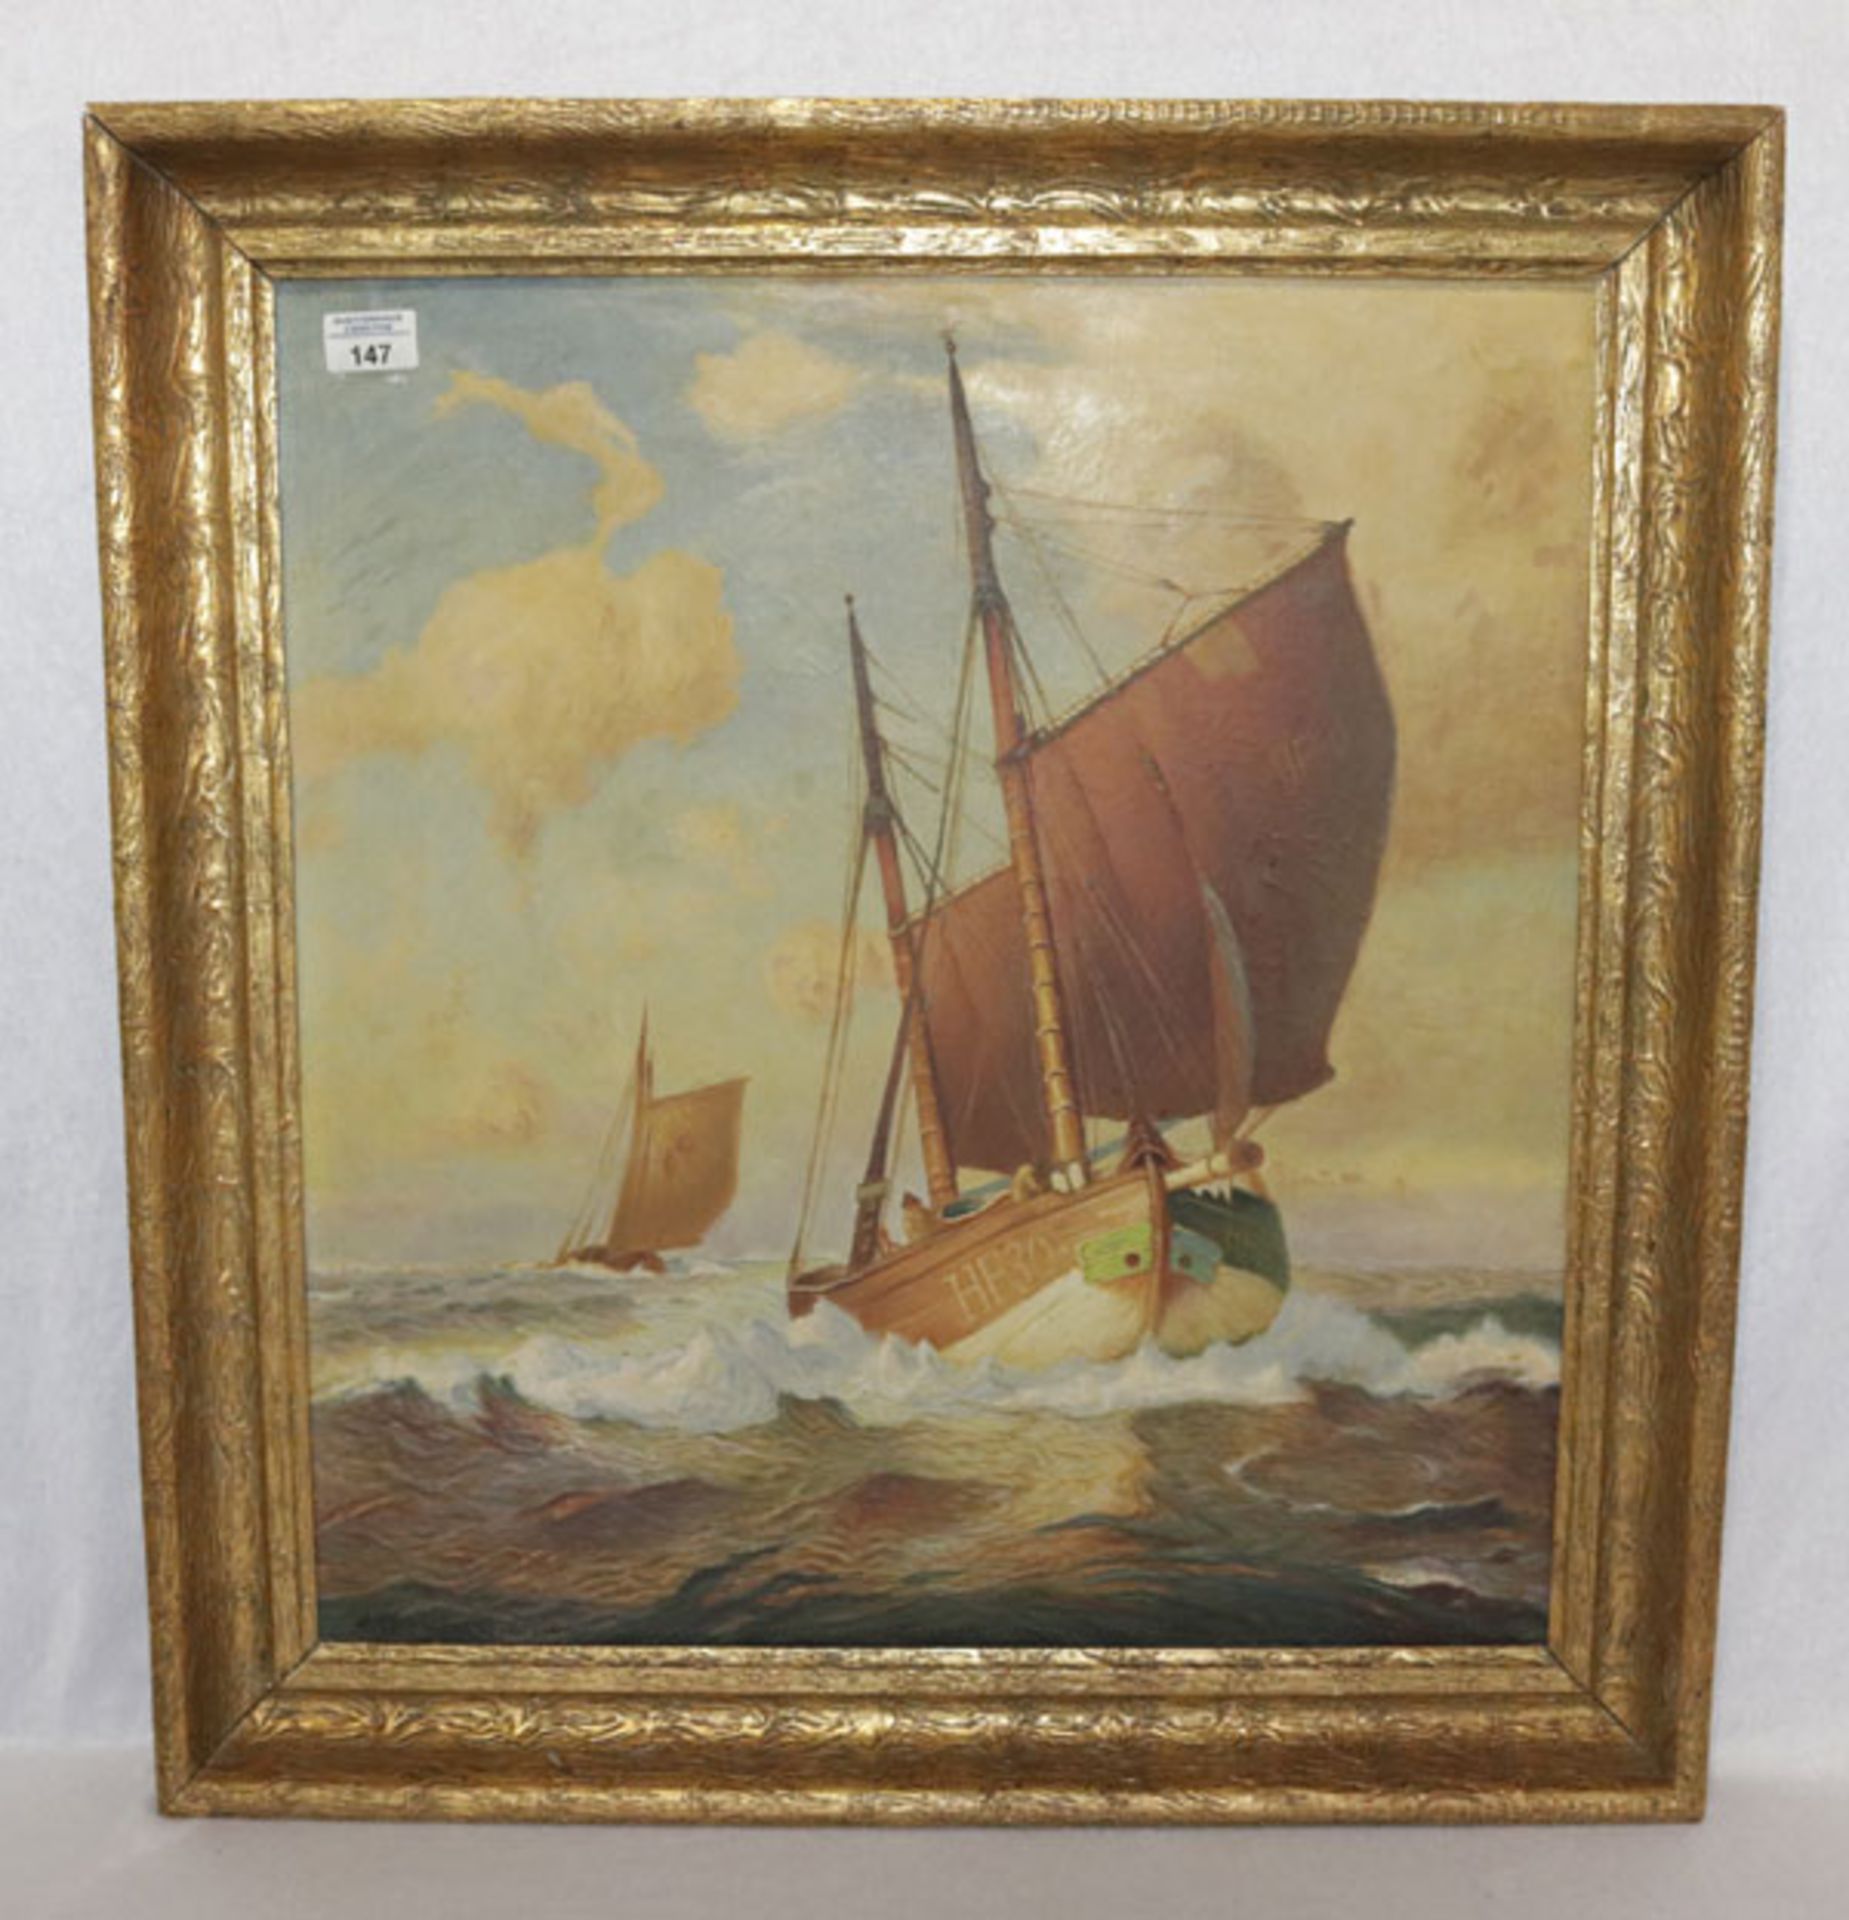 Gemälde ÖL/LW 'Segelschiffe', undeutlich signiert, Kopie ?, gerahmt, Rahmen leicht bestossen, inc. R